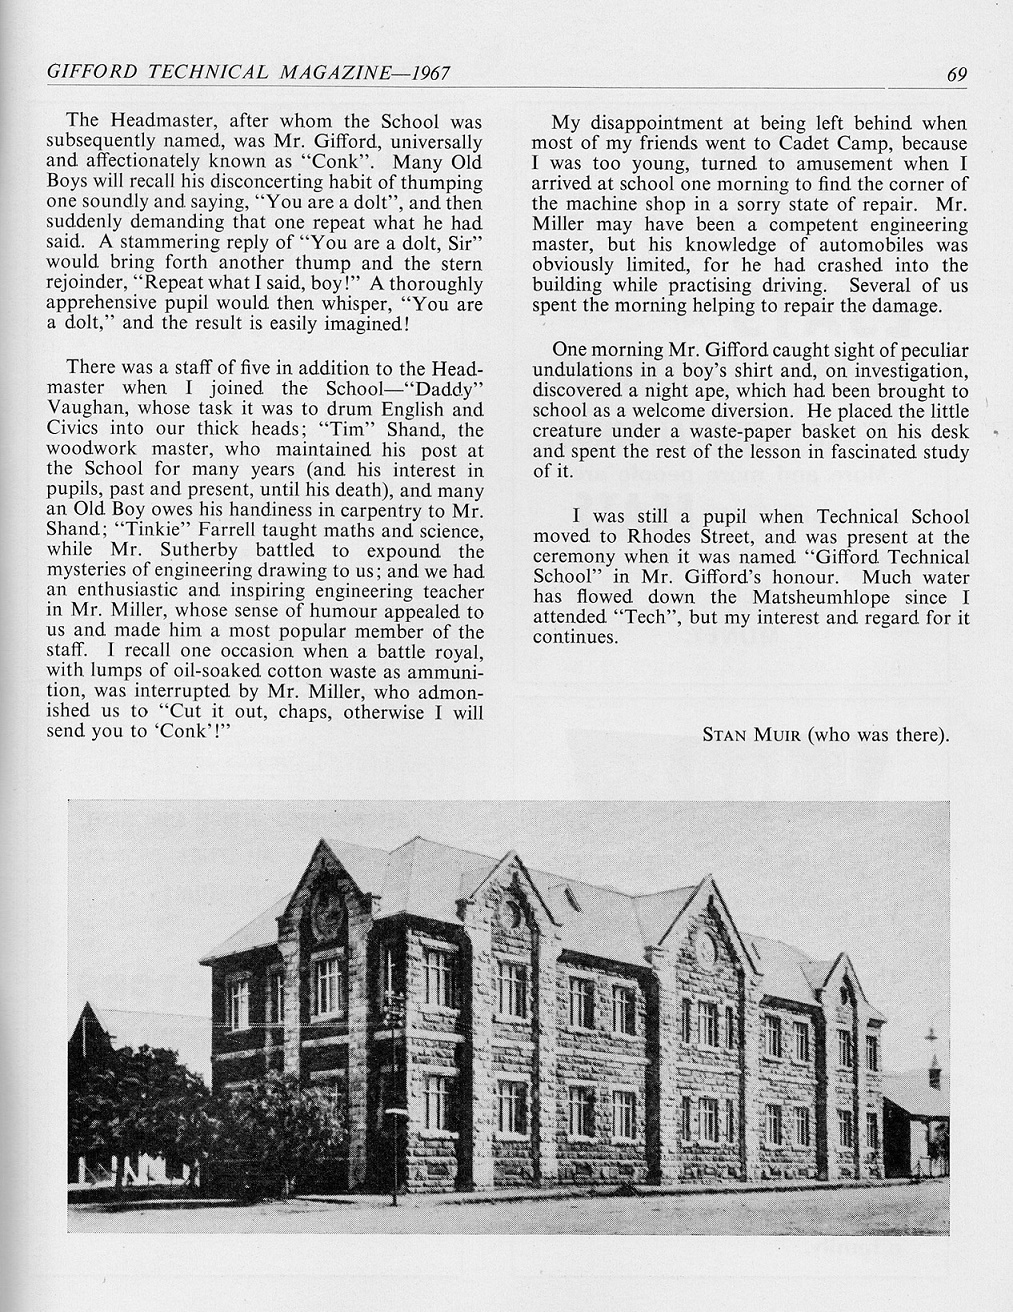 sch_sen_giff_1967_magazine_original_building.JPG